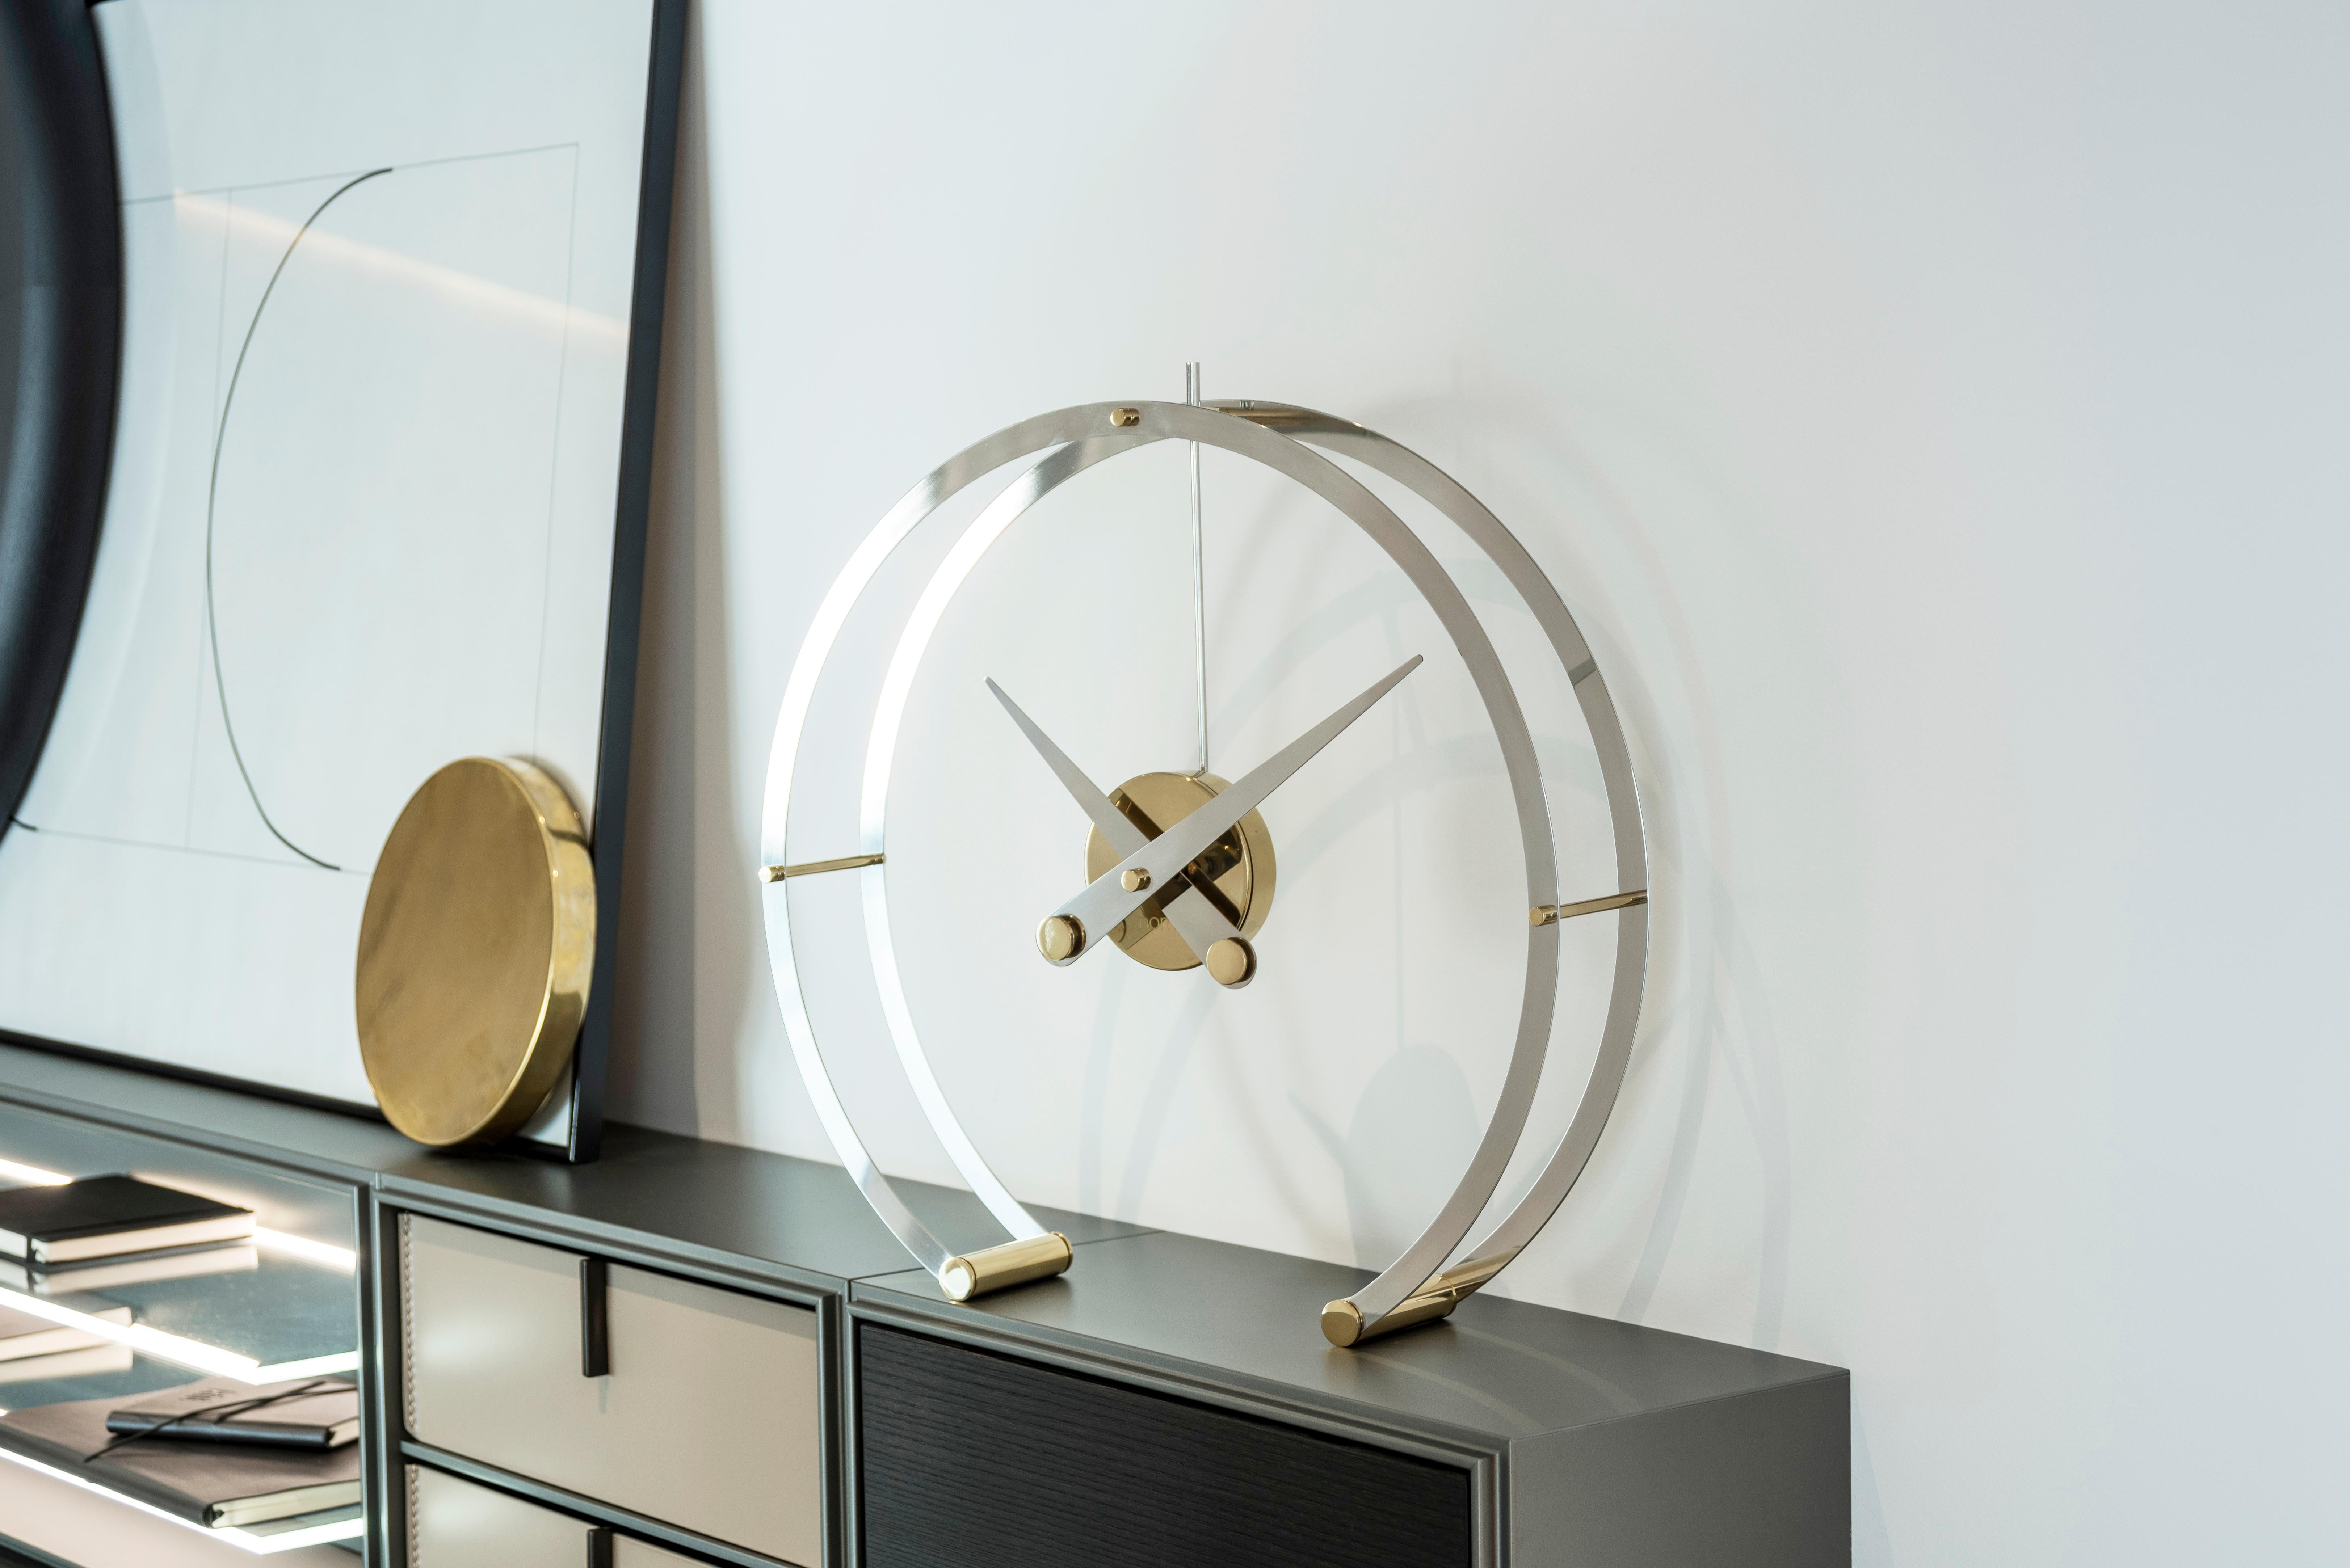 Réinventer avec ses structures Nomon vous apporte une horloge de la collection de bureau avec un design innovant et élégant.

L'horloge Omega I impressionne en maintenant une horloge suspendue dans l'air tout en perdant sa profondeur en supprimant